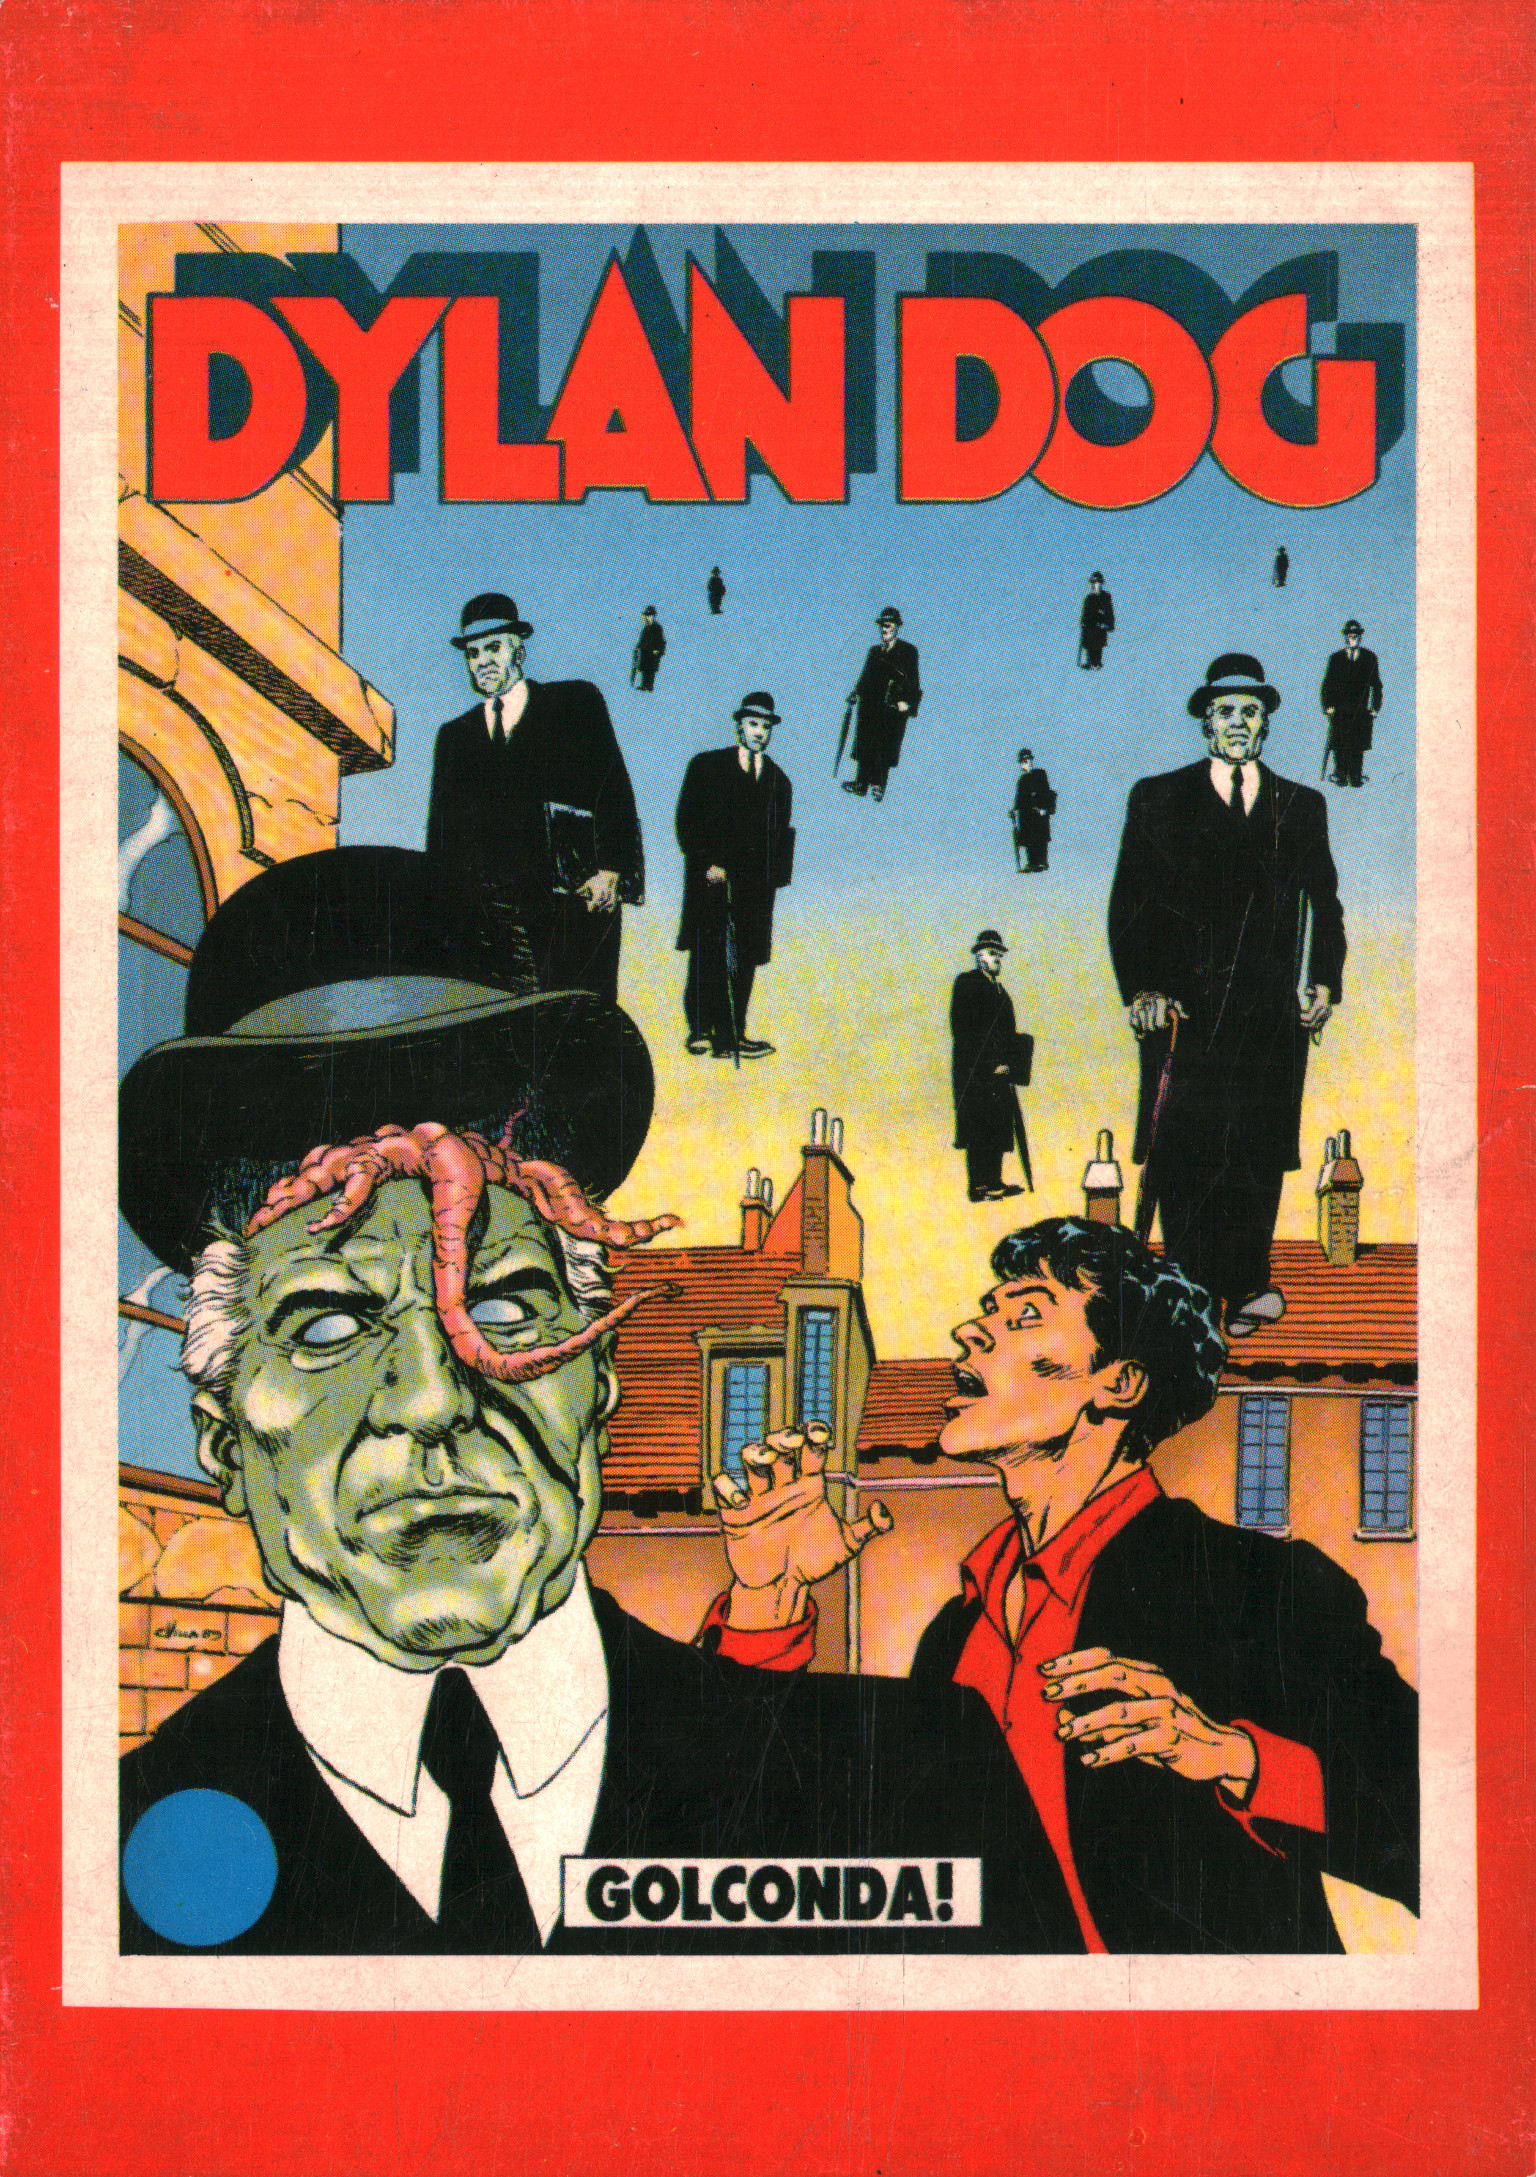 Cartes postales Dylan Dog, Dylan Dog (cartes postales)